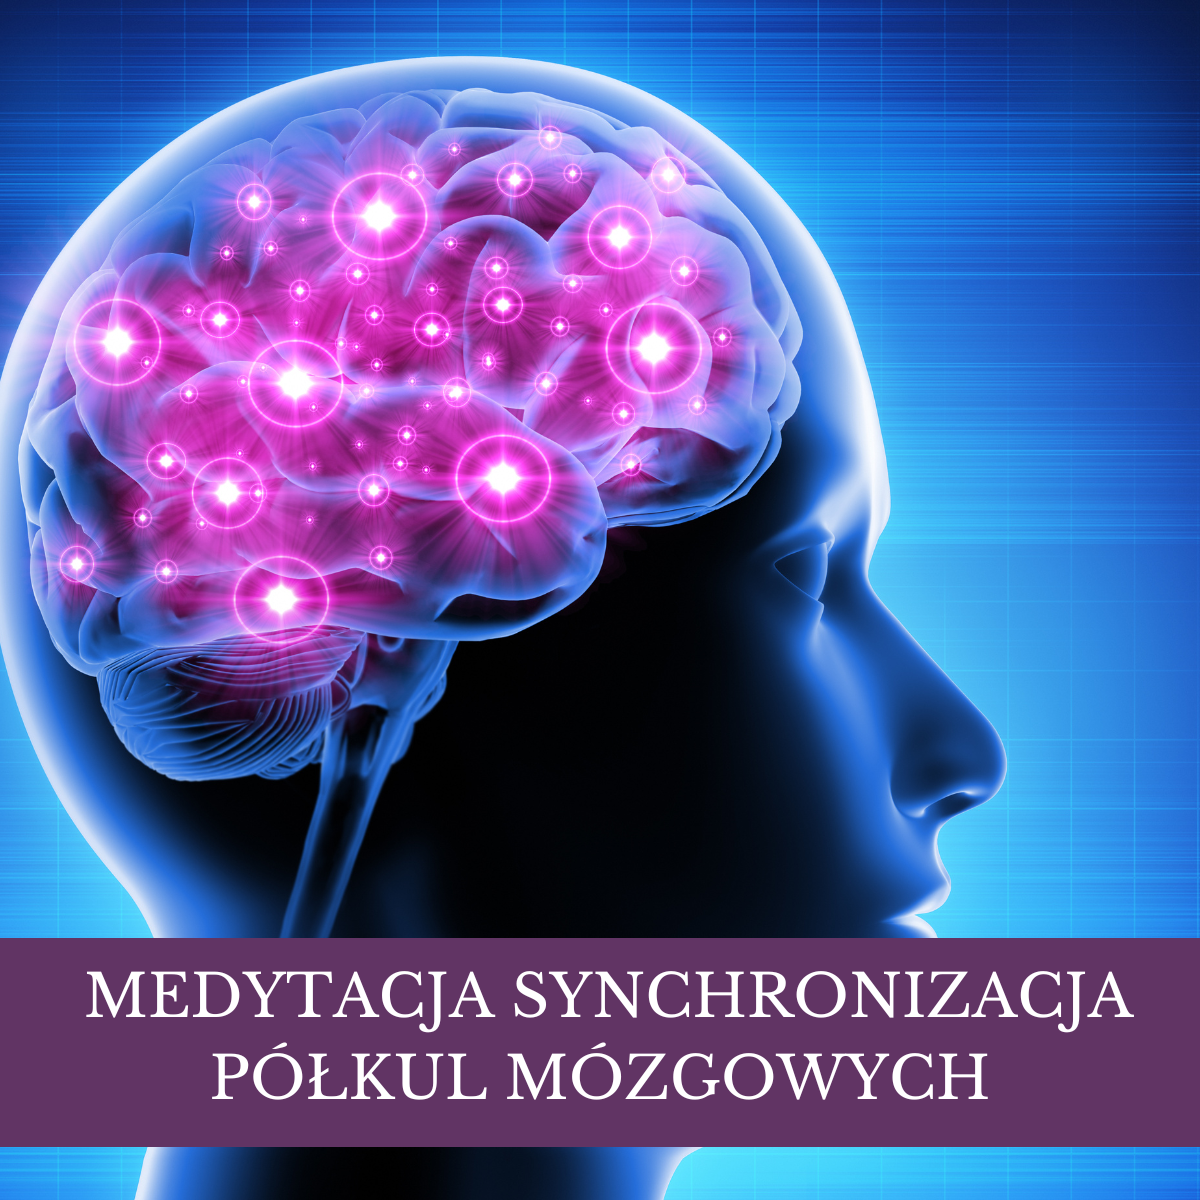 Potężna Medytacja Synchronizująca Dwie Półkule Mózgowe!